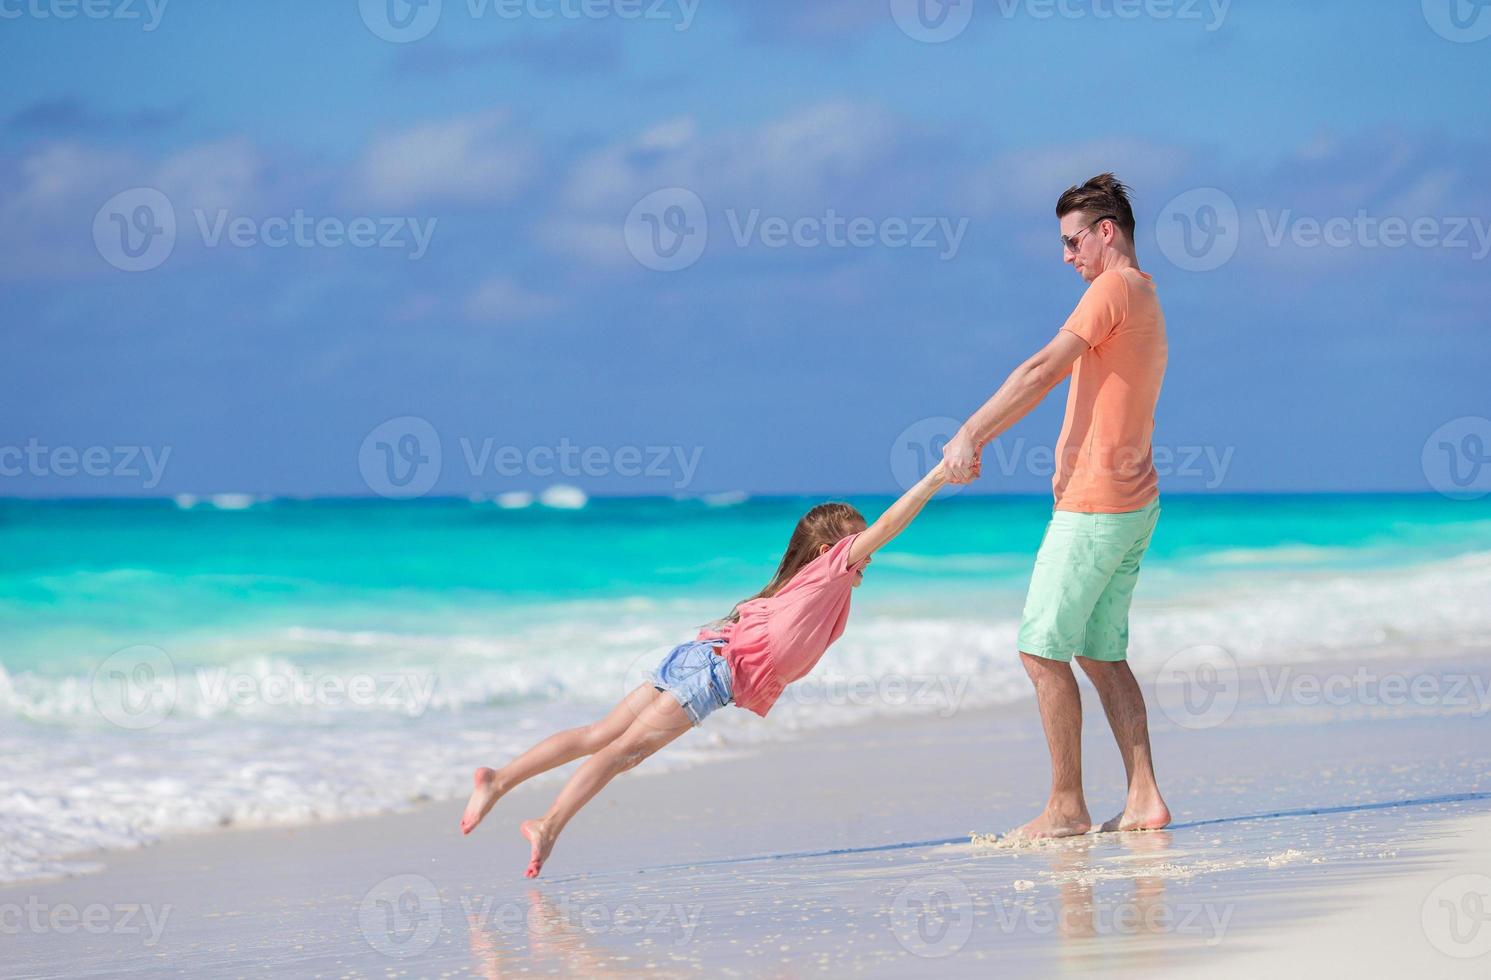 petite fille et papa heureux s'amusant pendant les vacances à la plage photo